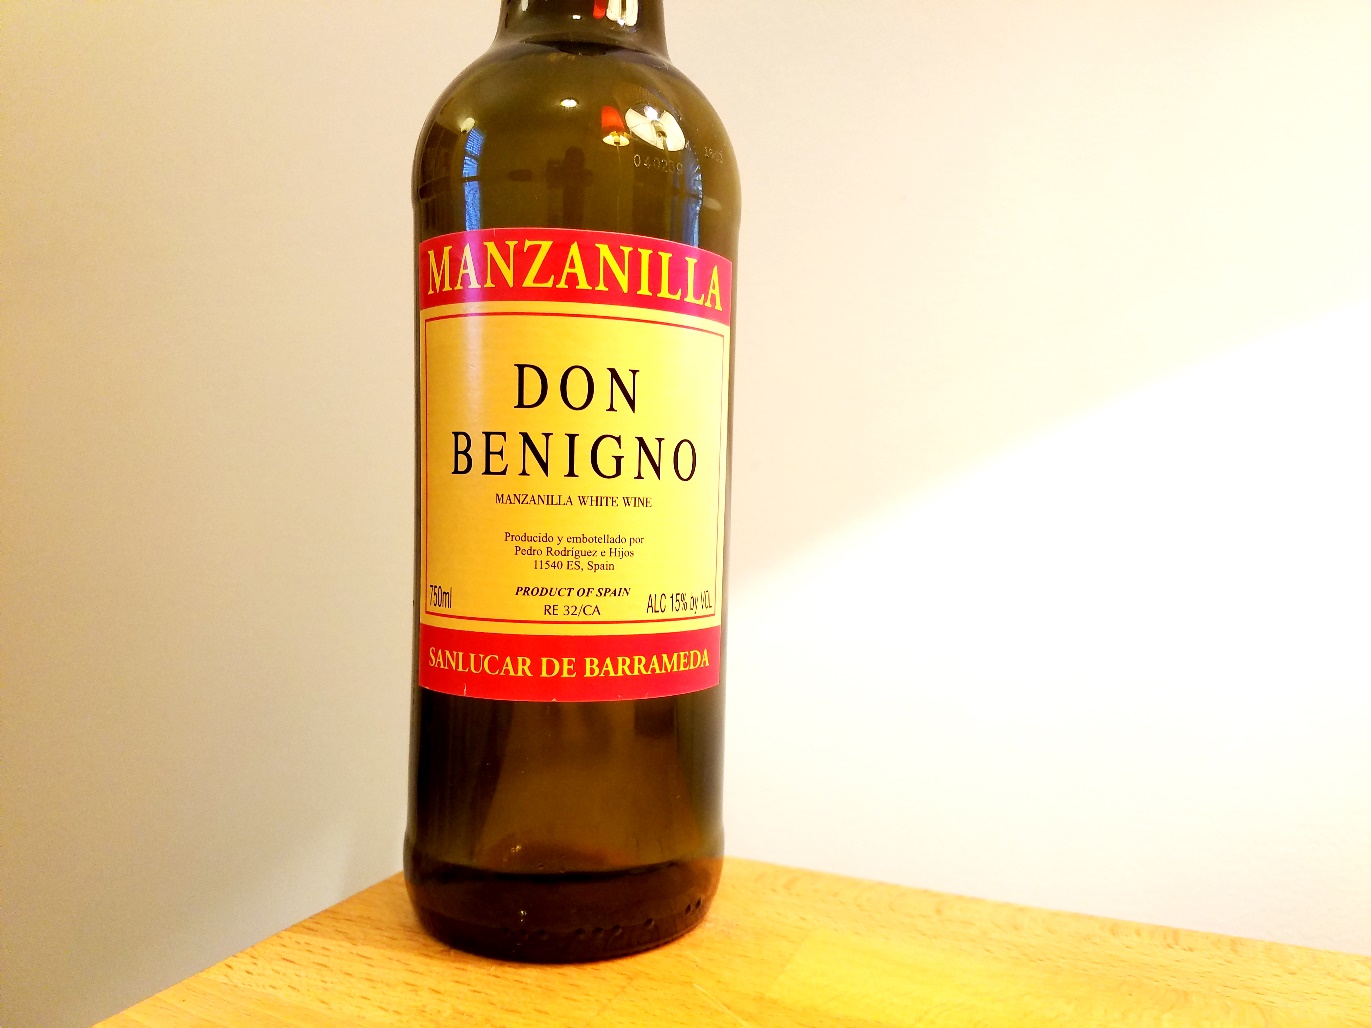 Don Benigno, Manzanilla Sherry, Sanlucar de Barrameda, Spain, Wine Casual